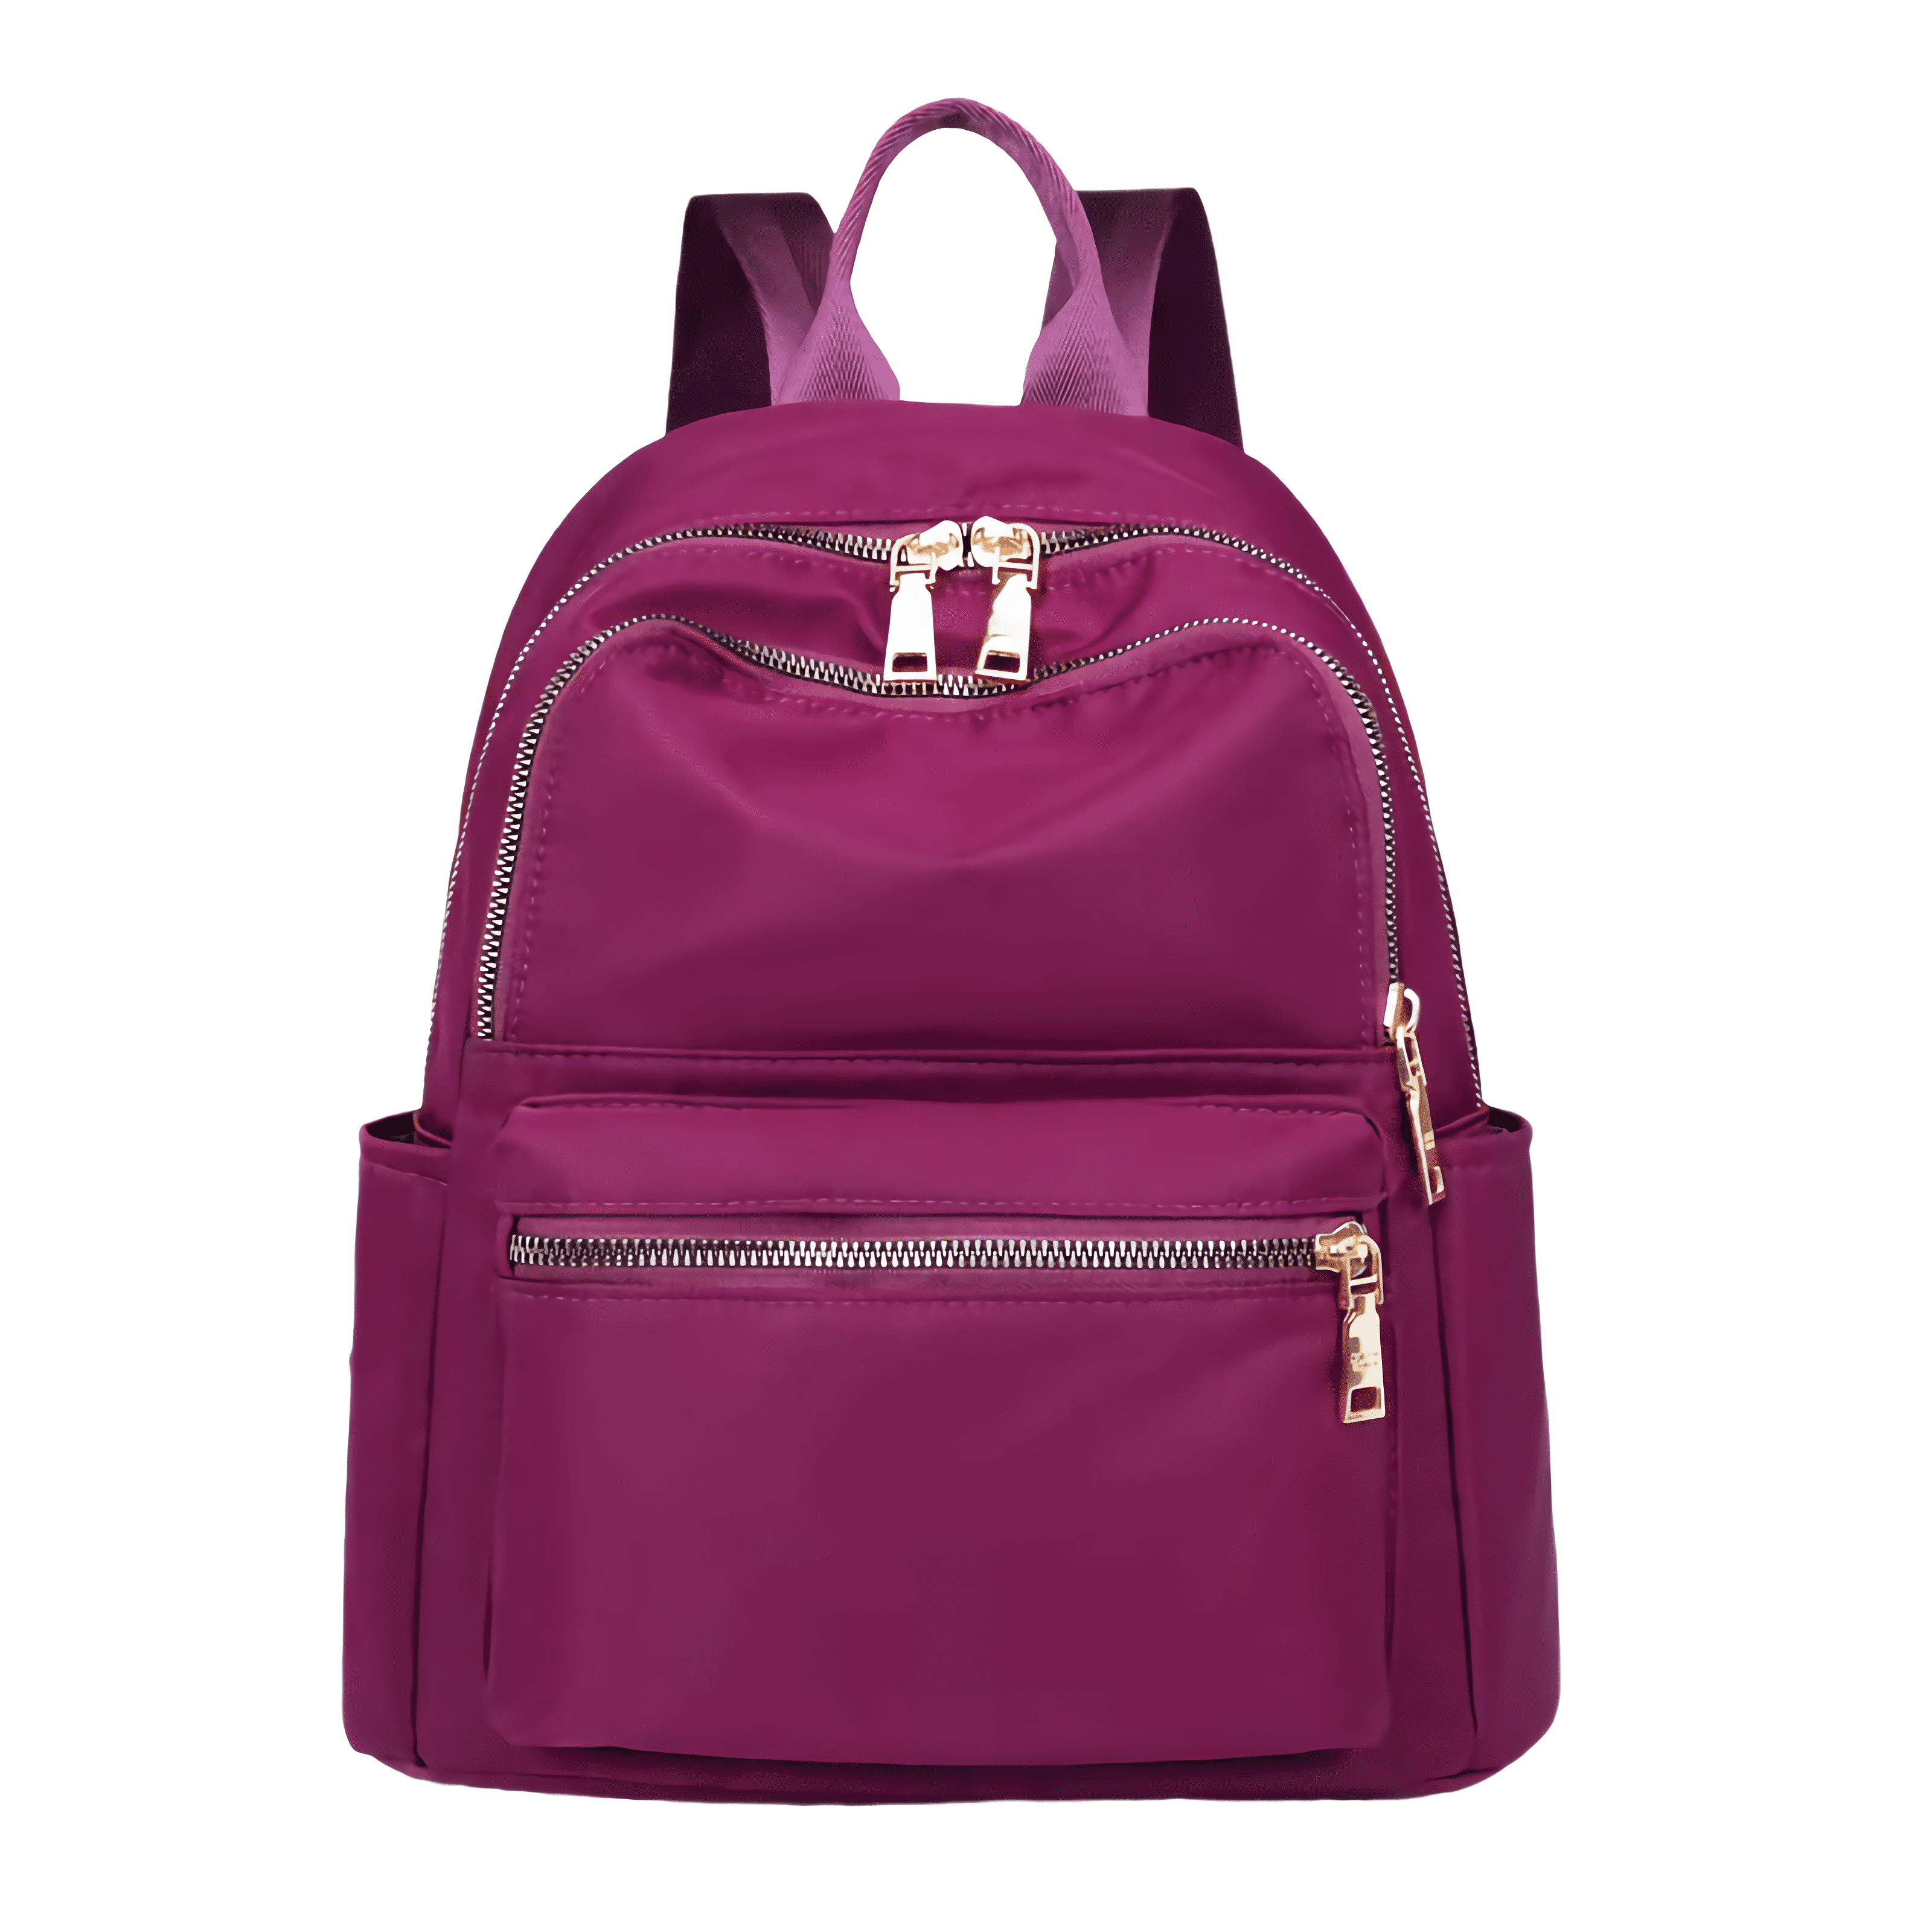 perfrom Backpack for Women, Travel Backpack Shoulder Bag Lightweight ...